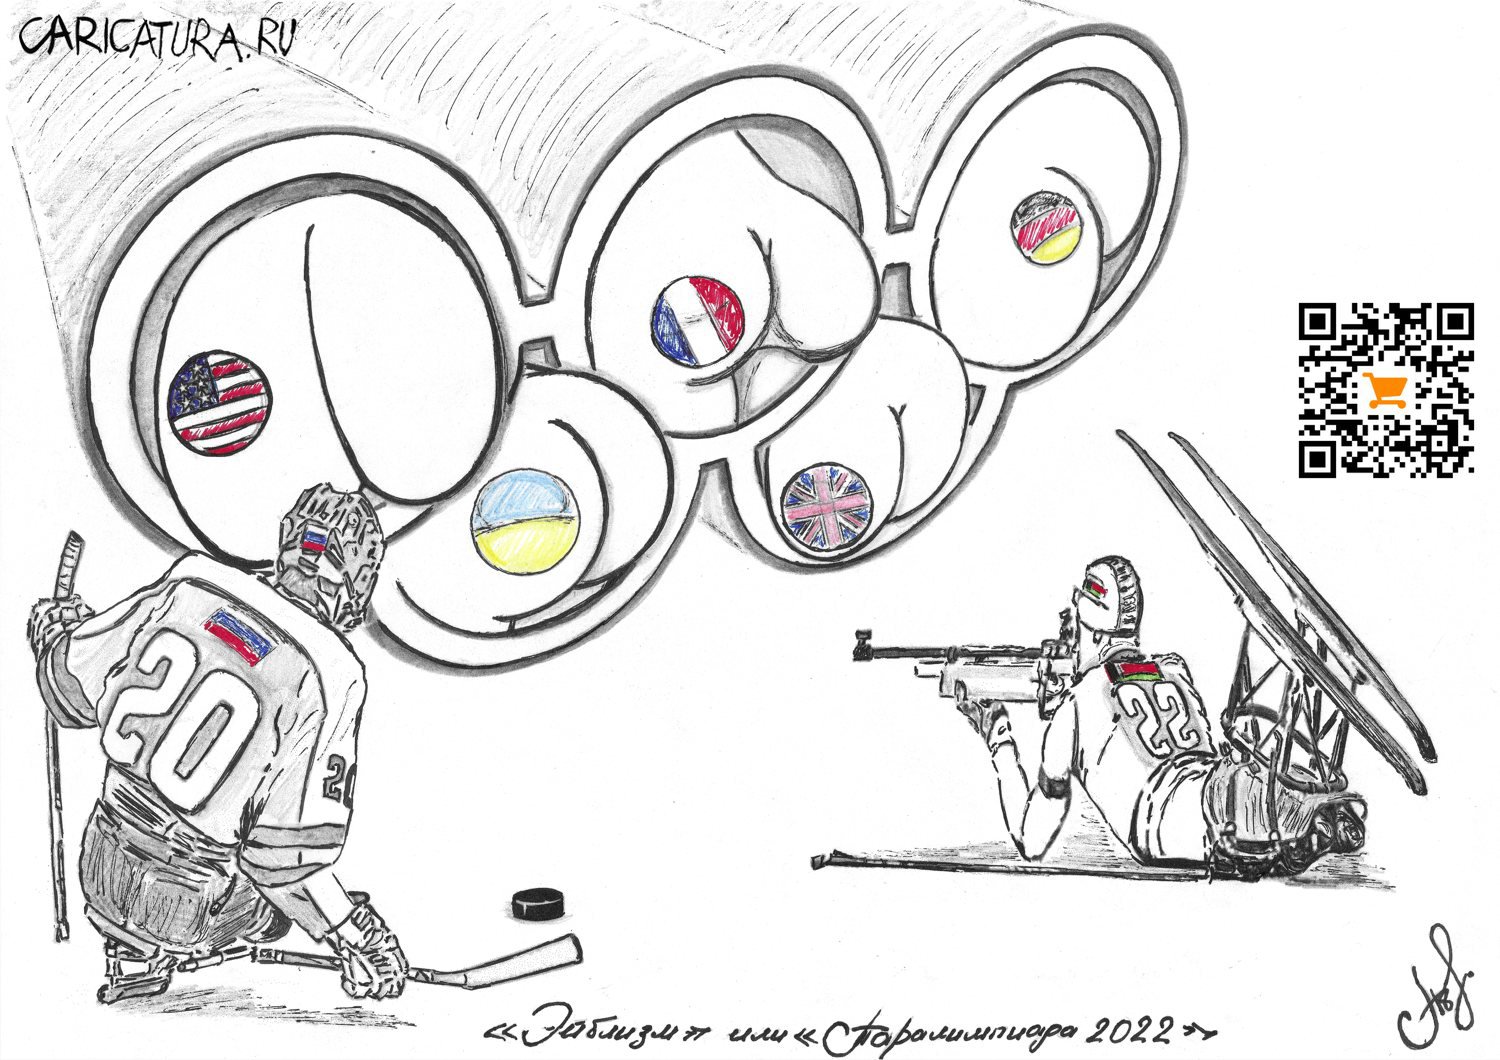 Карикатура "Эйблизм или Паралимпиада 2022", Артём Поплавский